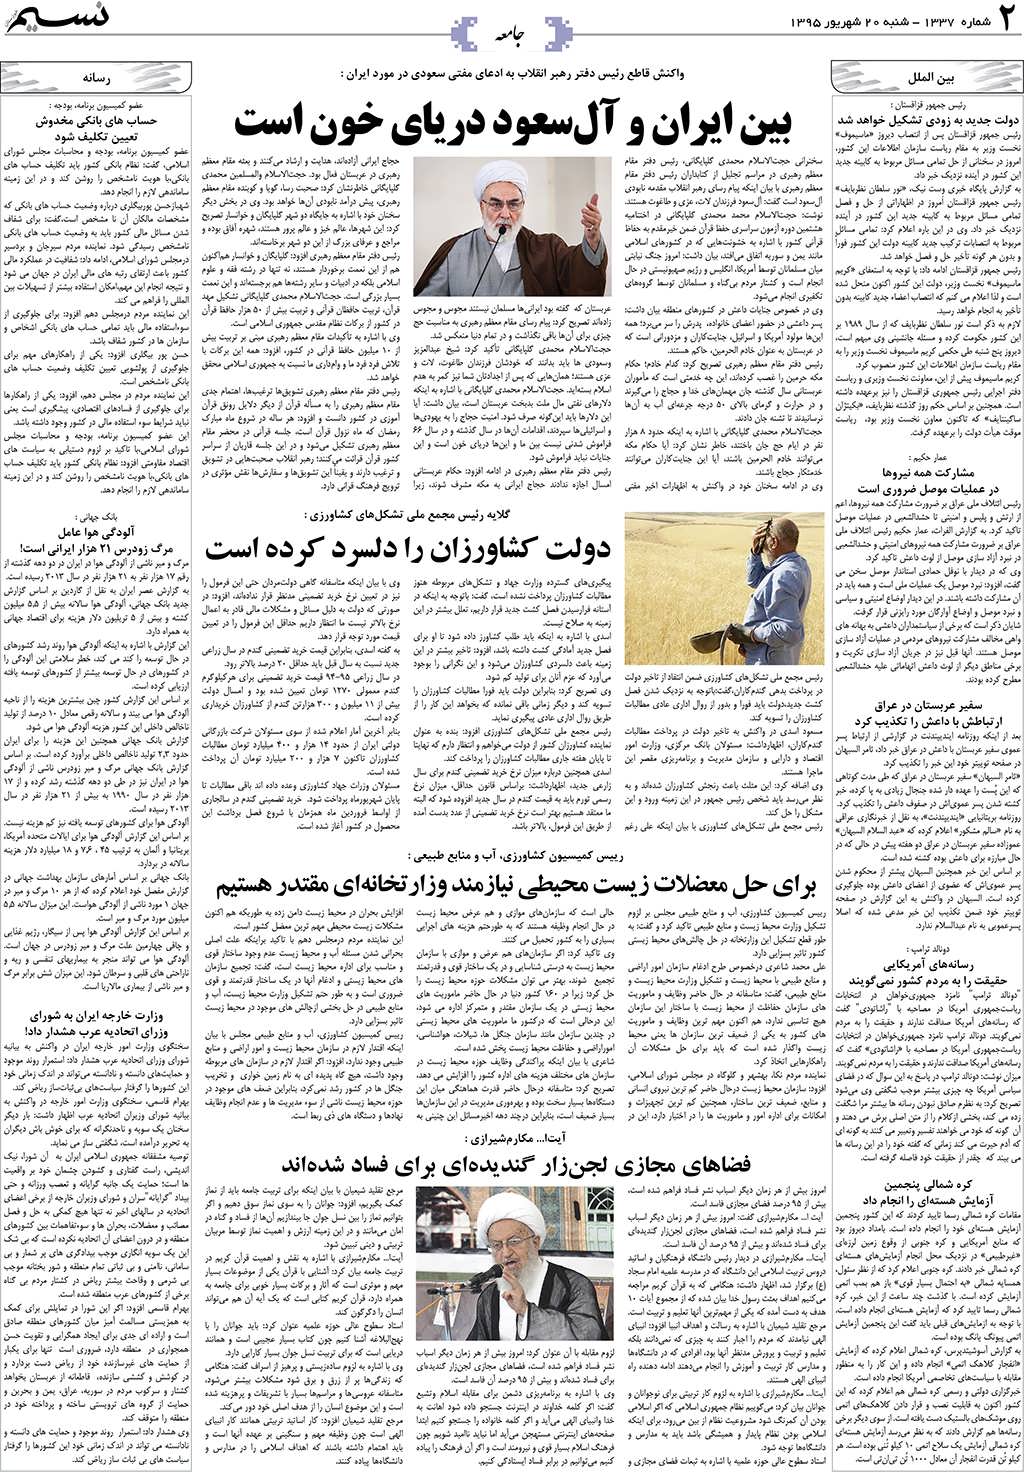 صفحه جامعه روزنامه نسیم شماره 1337